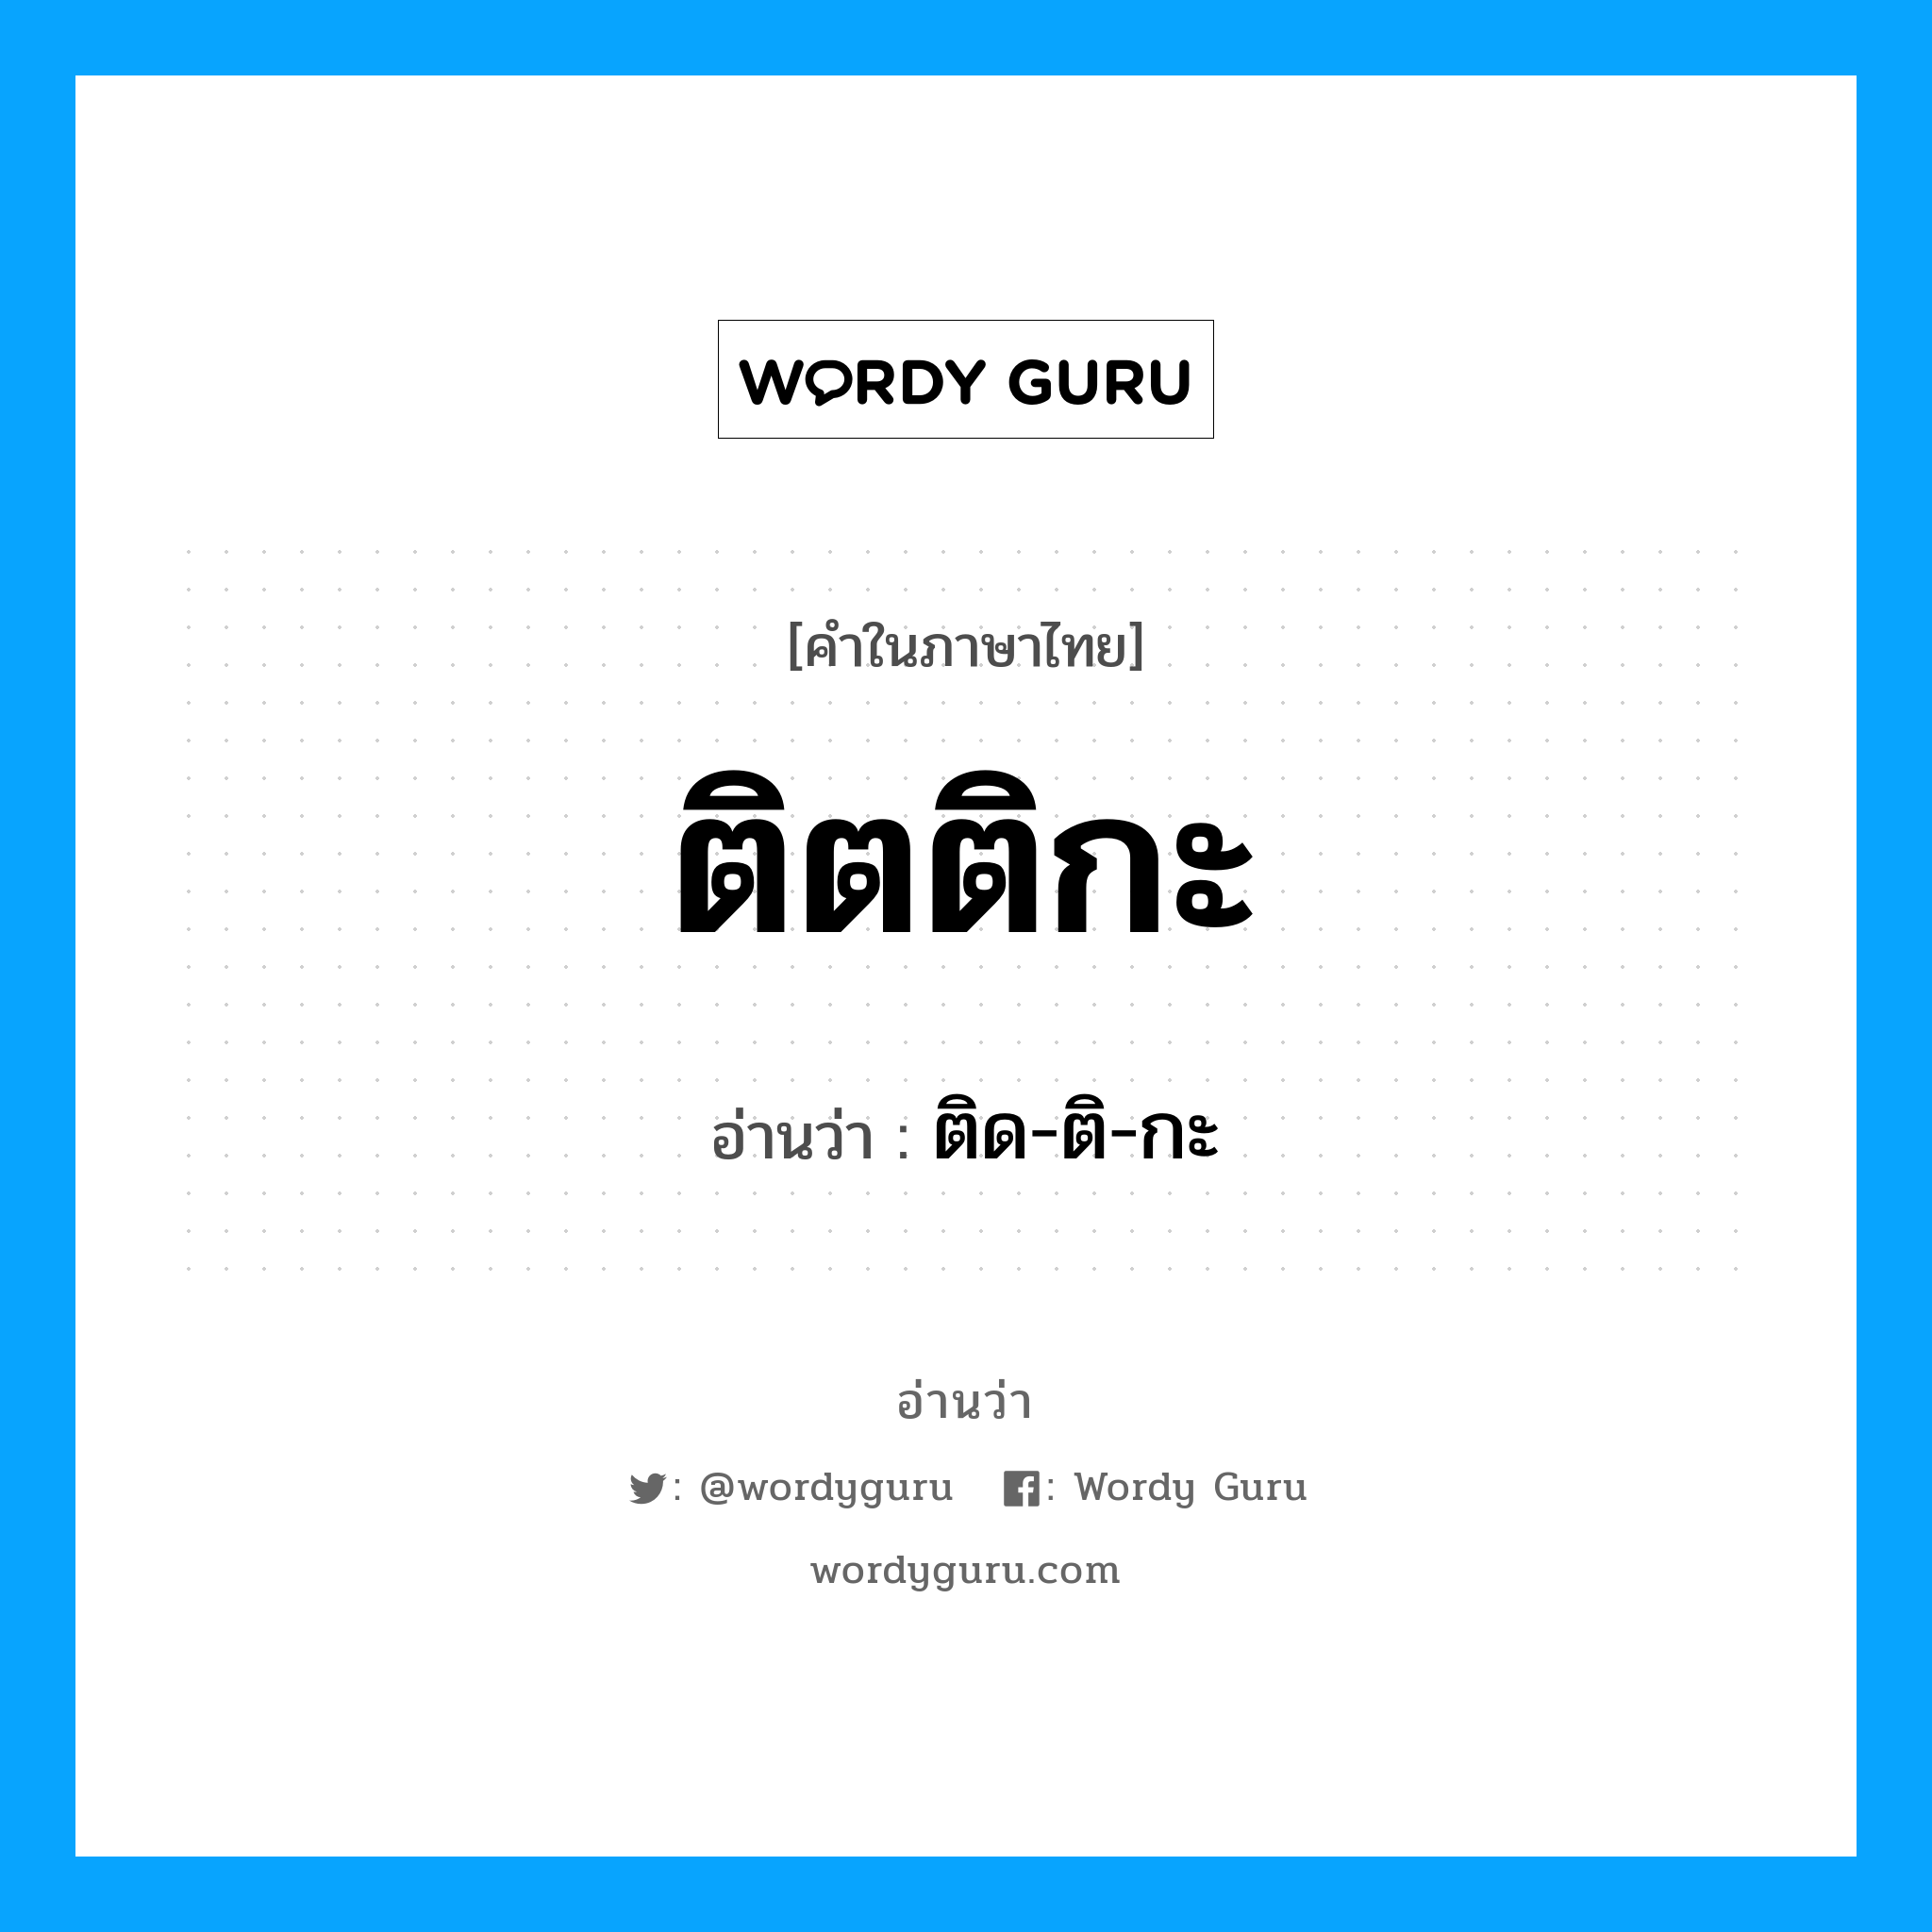 ติด-ติ-กะ เป็นคำอ่านของคำไหน?, คำในภาษาไทย ติด-ติ-กะ อ่านว่า ติตติกะ